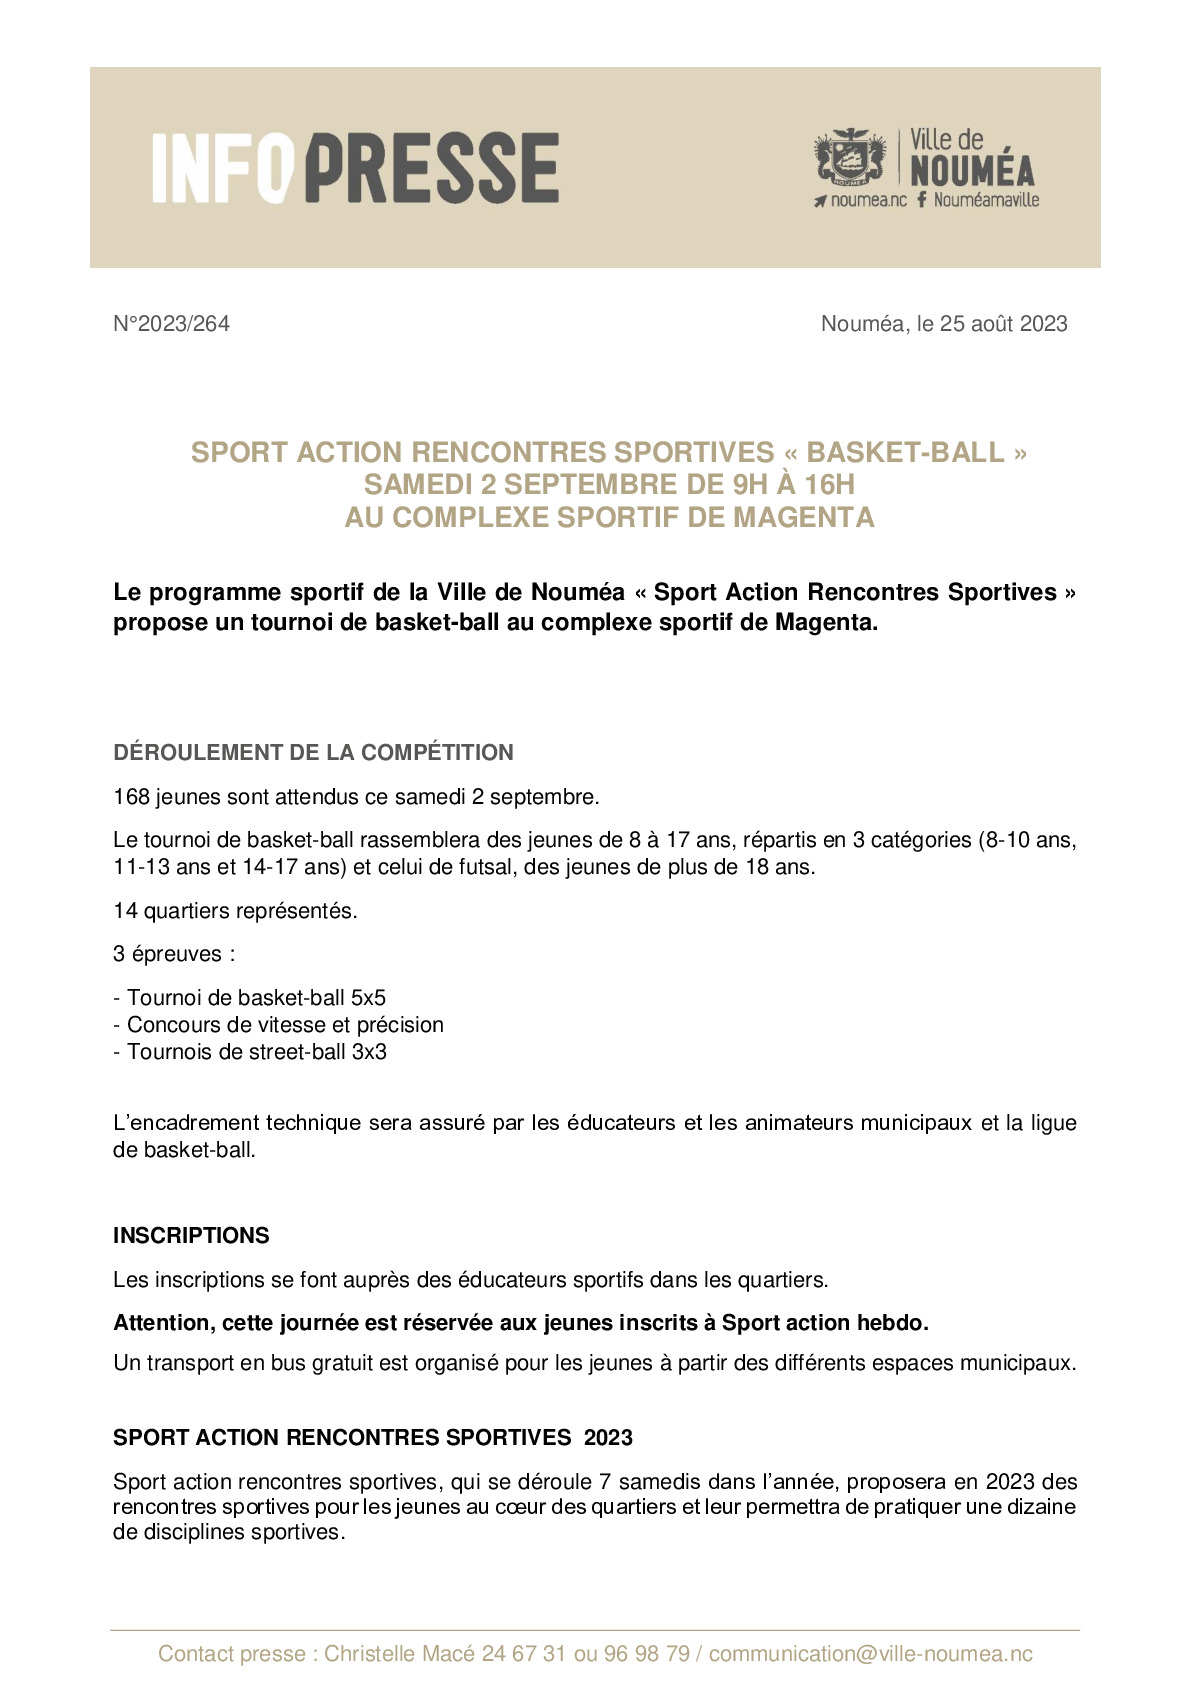 IP 264 SA rencontre sportives basket-ball.pdf